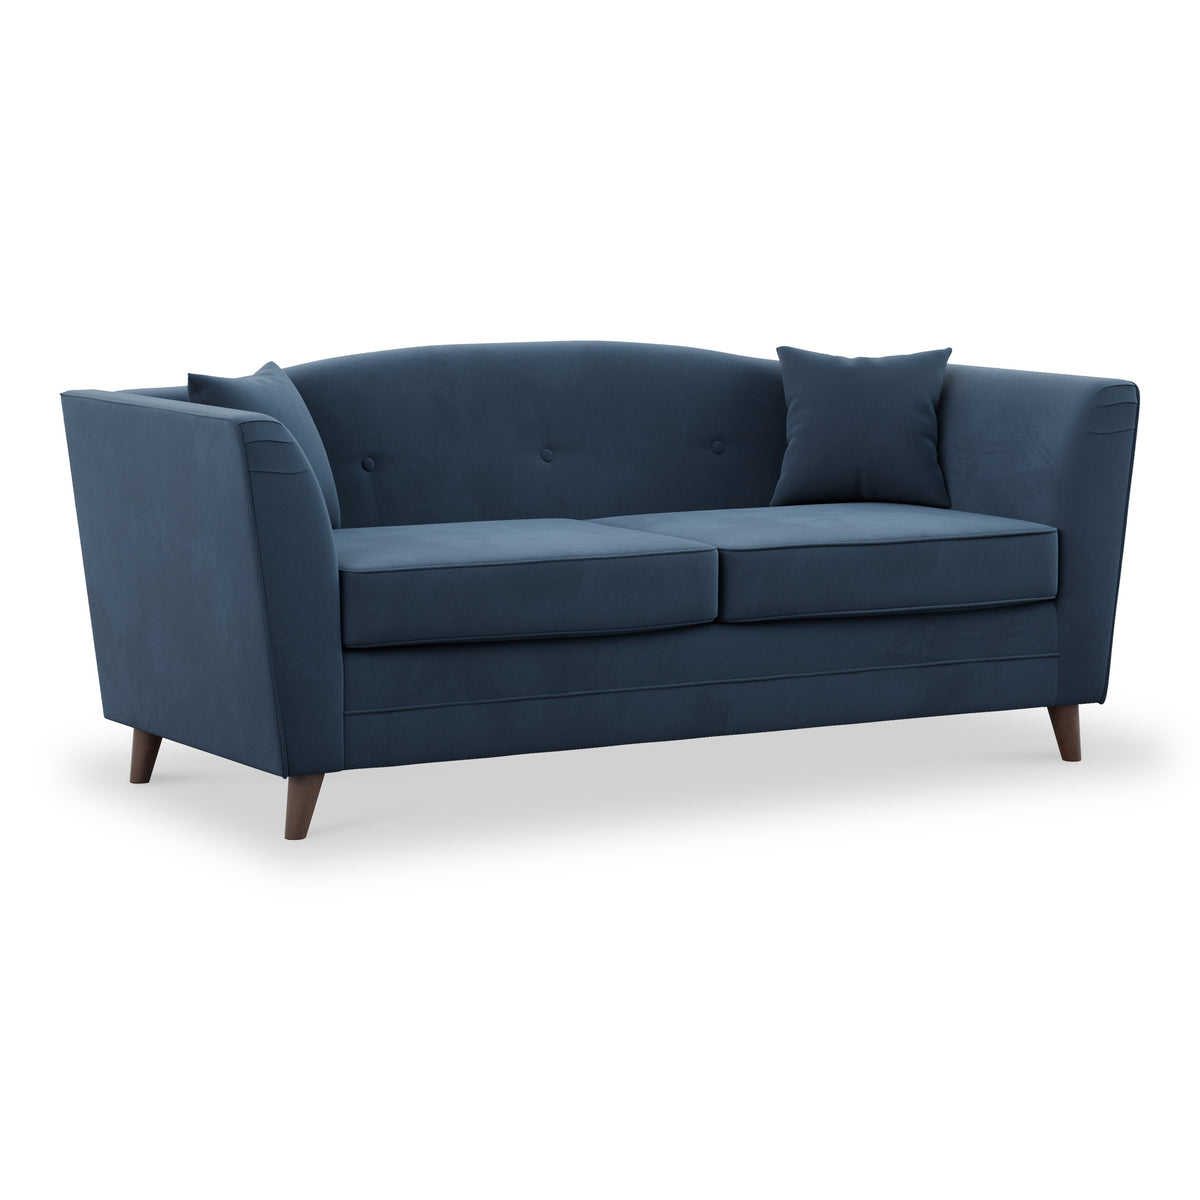 Pippa Teal Plush Velvet 3 Seater Sofa from Roseland Furniture